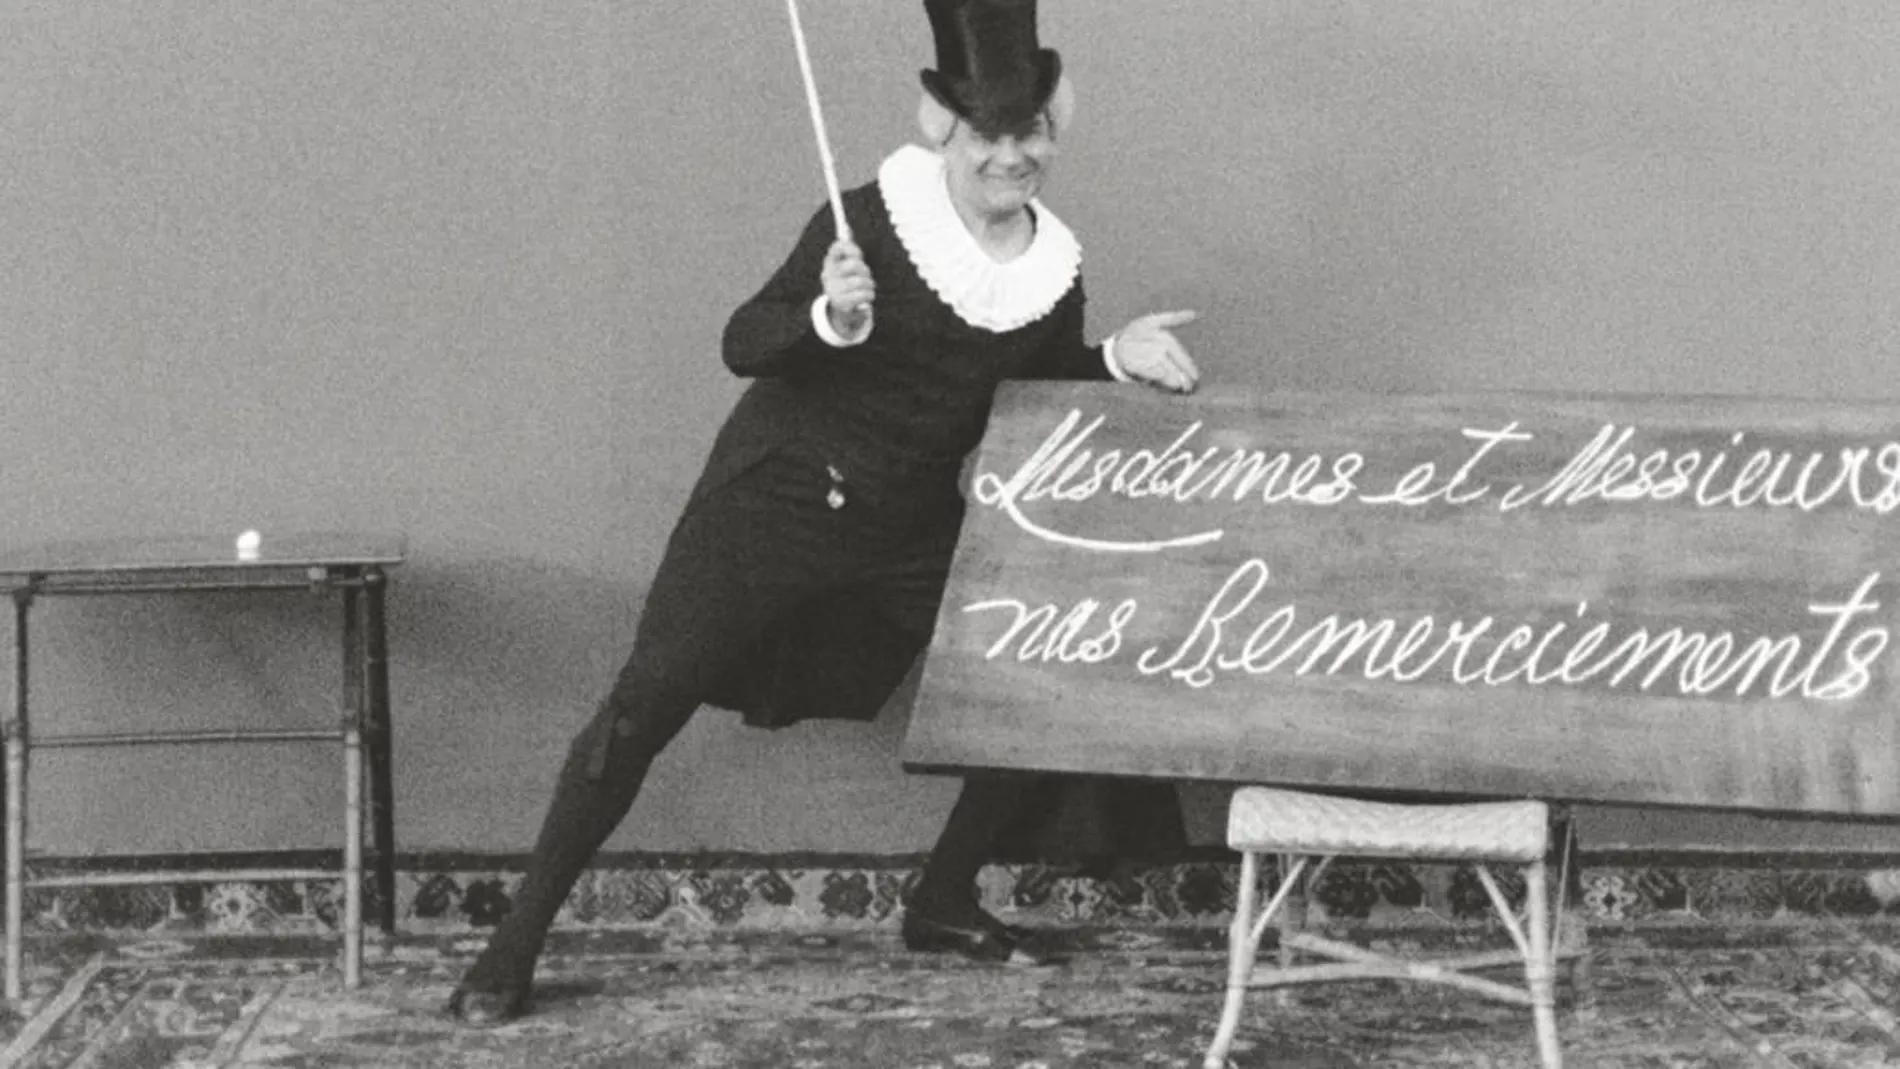 Las películas mostradas han sido restauradas digitalmente por el Instituto Lumière